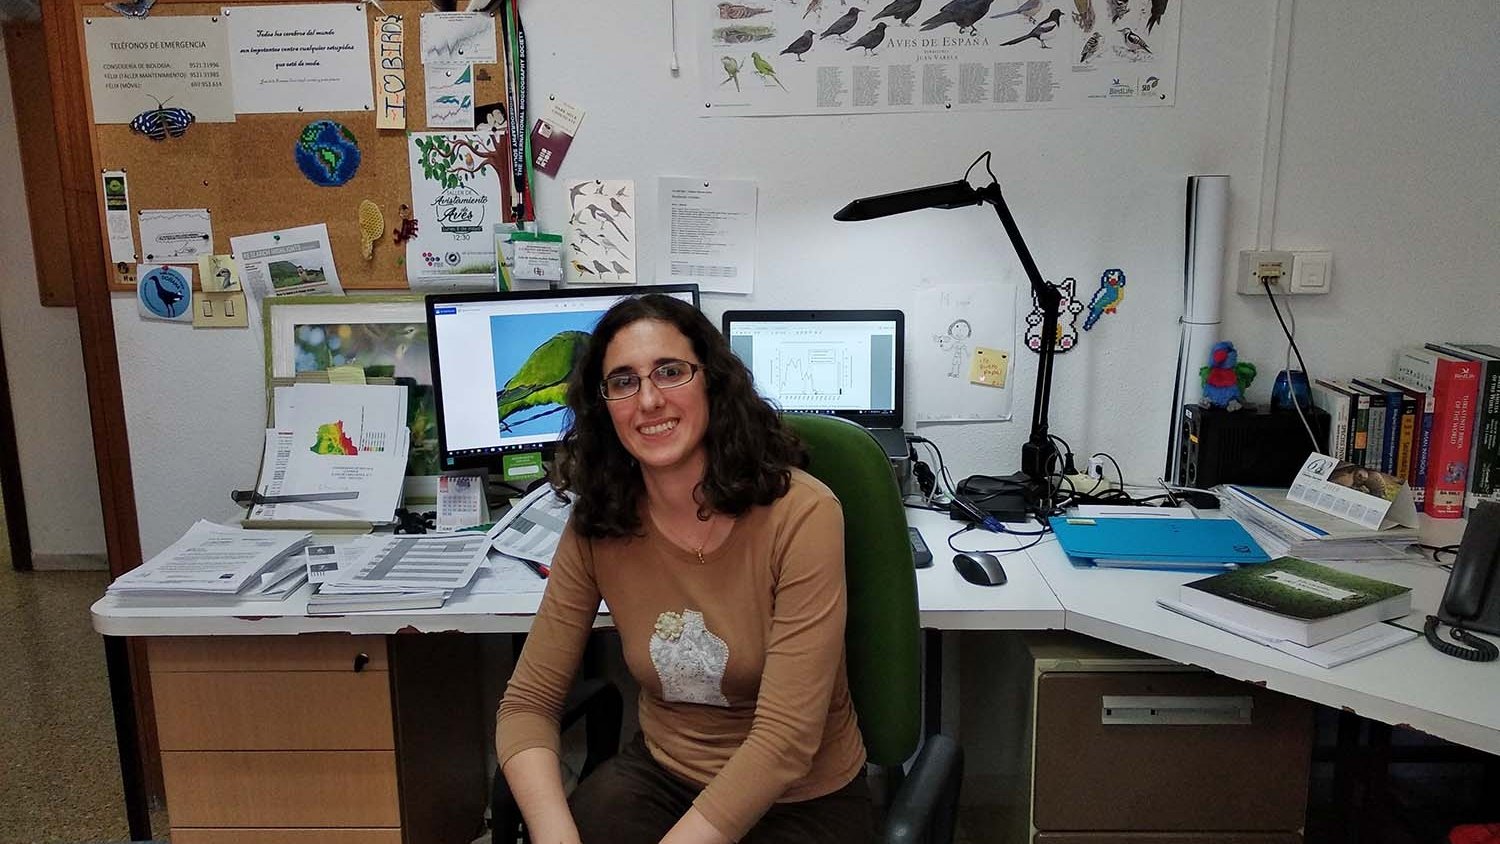 Lucrecia Souviron, investigadora de la UMA, recibe un premio internacional de Biología